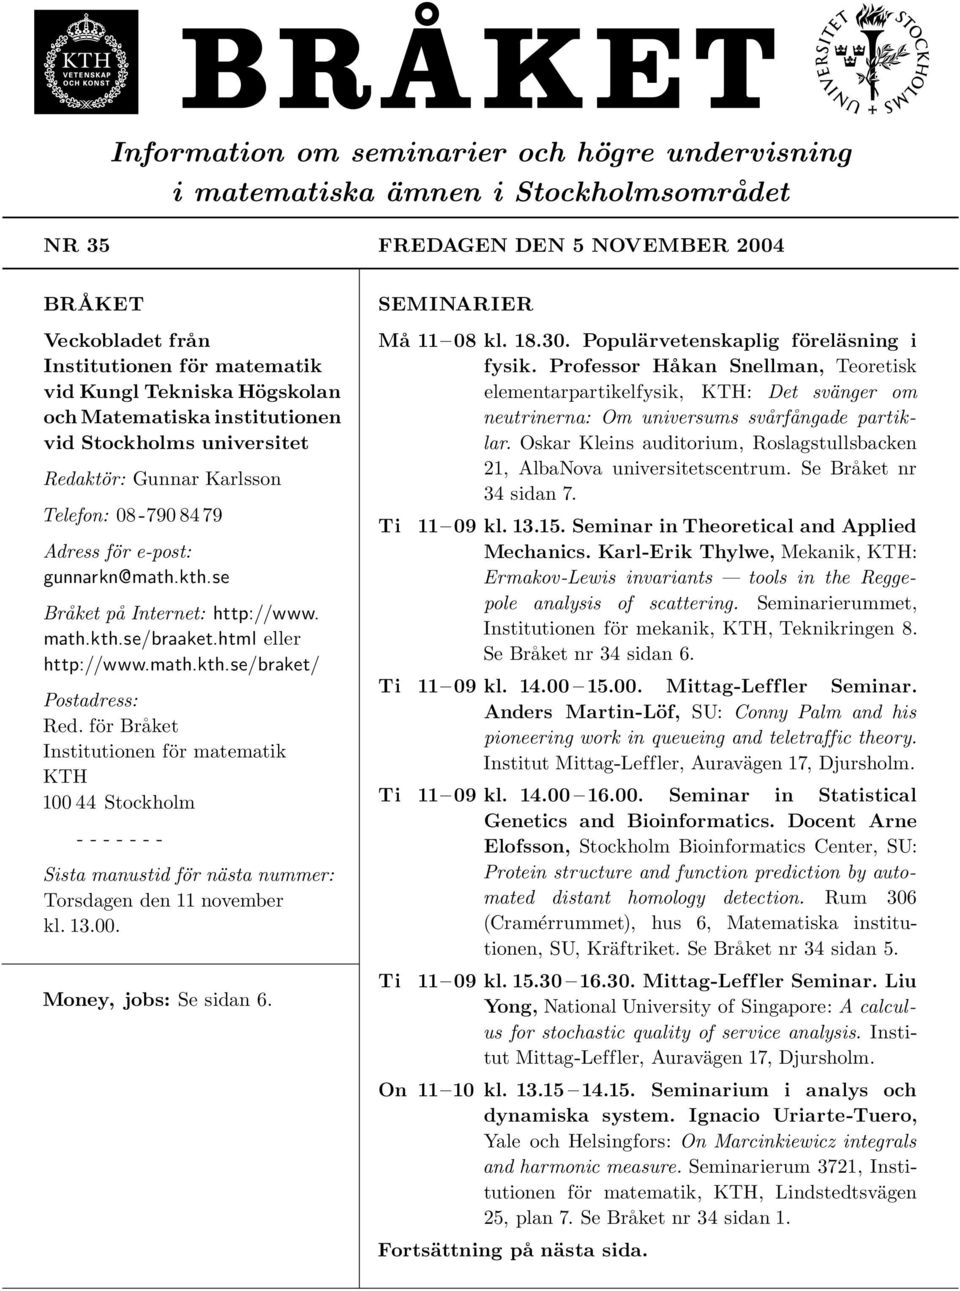 html eller http://www.math.kth.se/braket/ Postadress: Red. för Bra ket Institutionen för matematik KTH 100 44 Stockholm - - - - - - - Sista manustid för nästa nummer: Torsdagen den 11 november kl. 13.